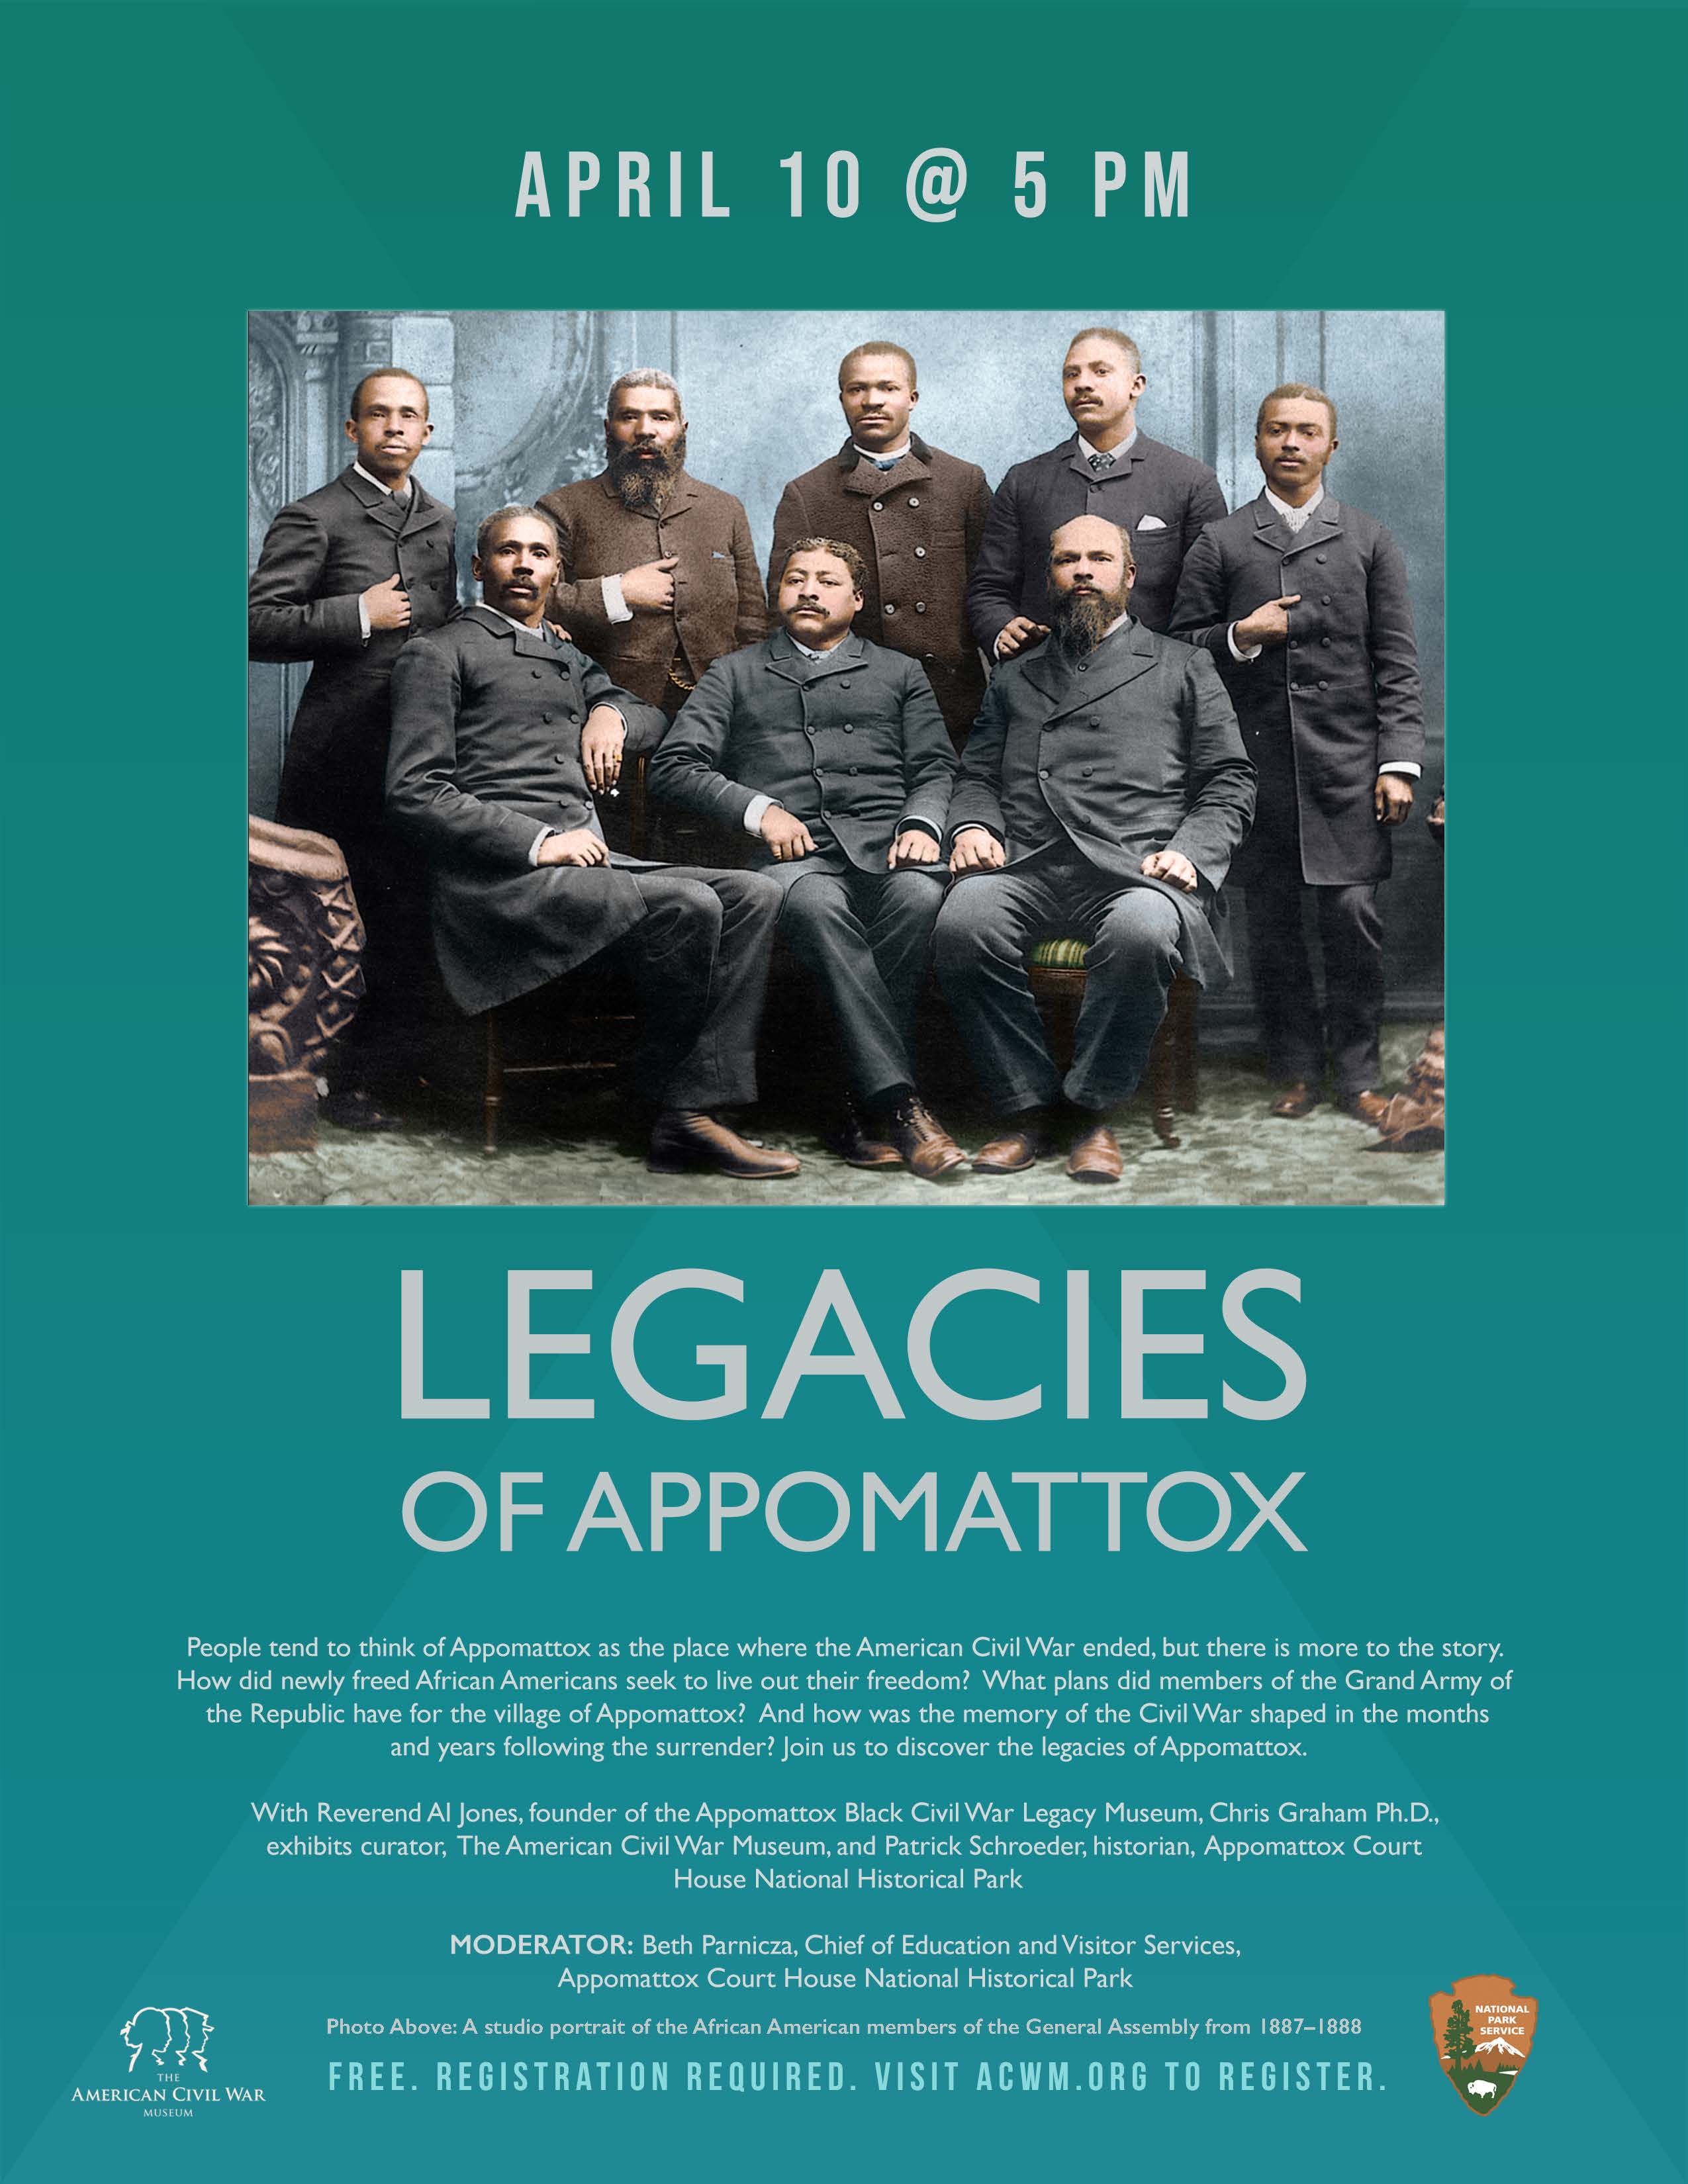 Legacies of Appomattox